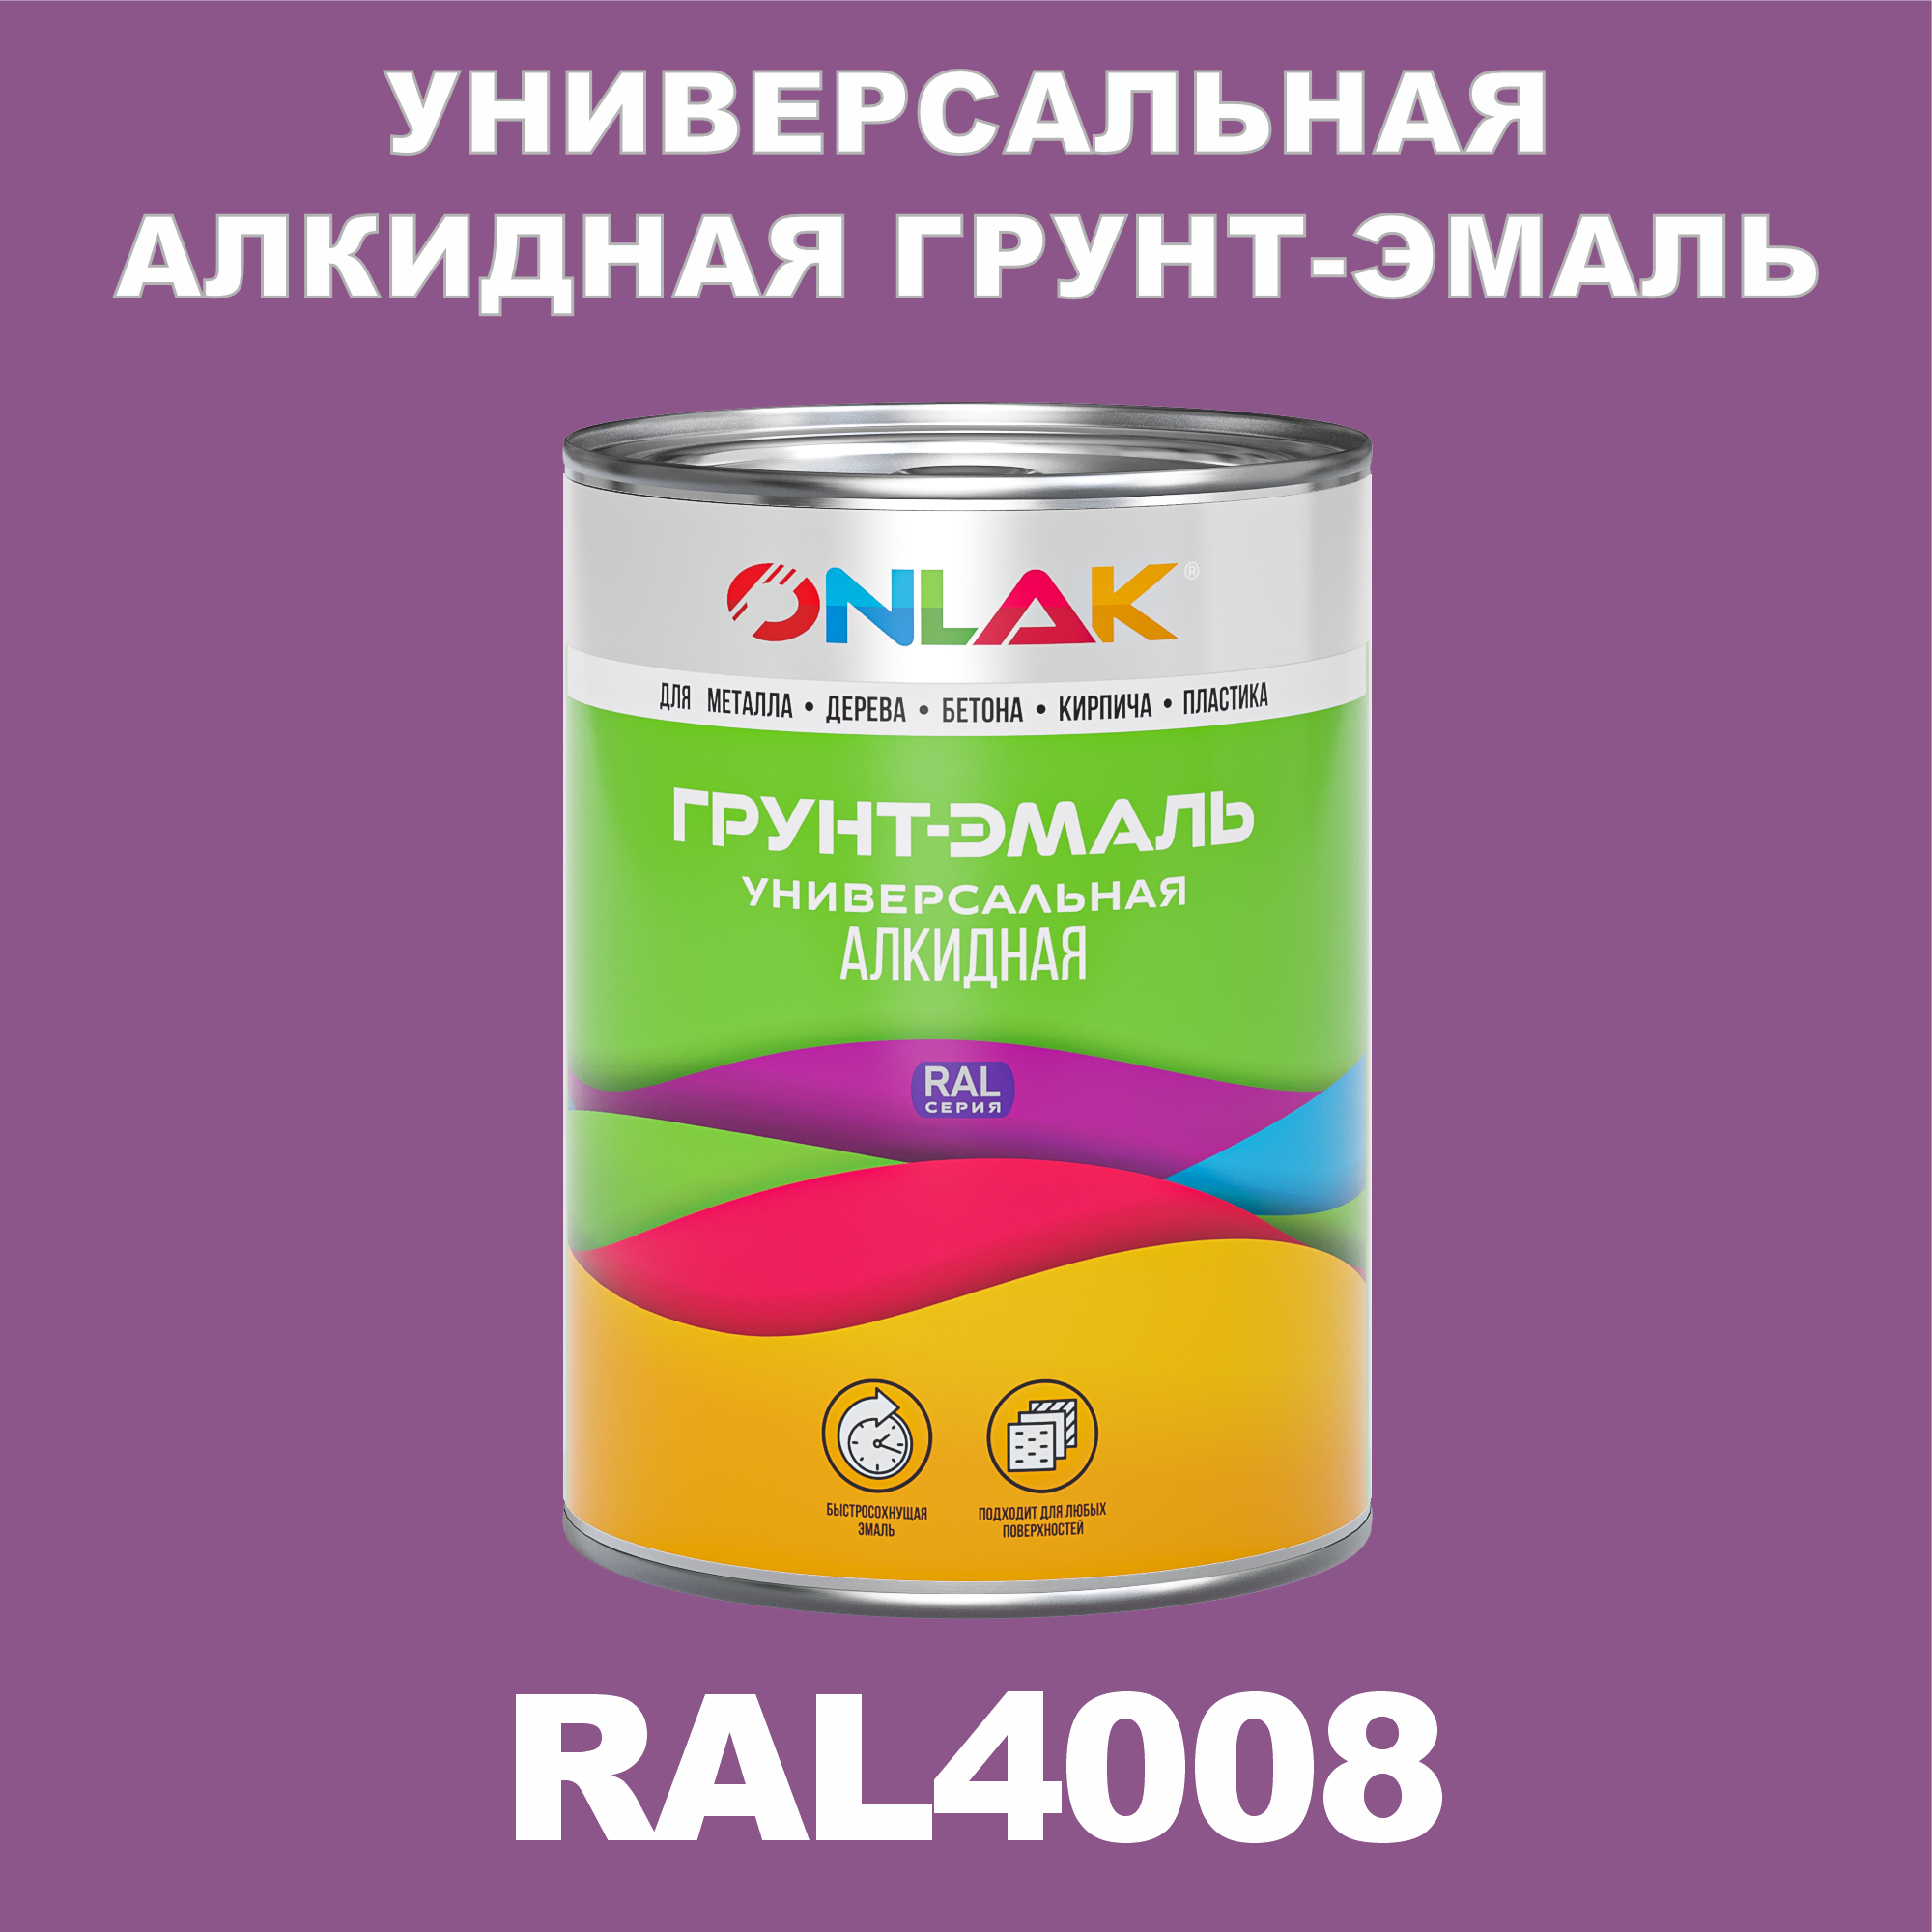 Грунт-эмаль ONLAK 1К RAL4008 антикоррозионная алкидная по металлу по ржавчине 1 кг антикоррозионная грунт эмаль onlak ral 4009 фиолетовый 593 мл